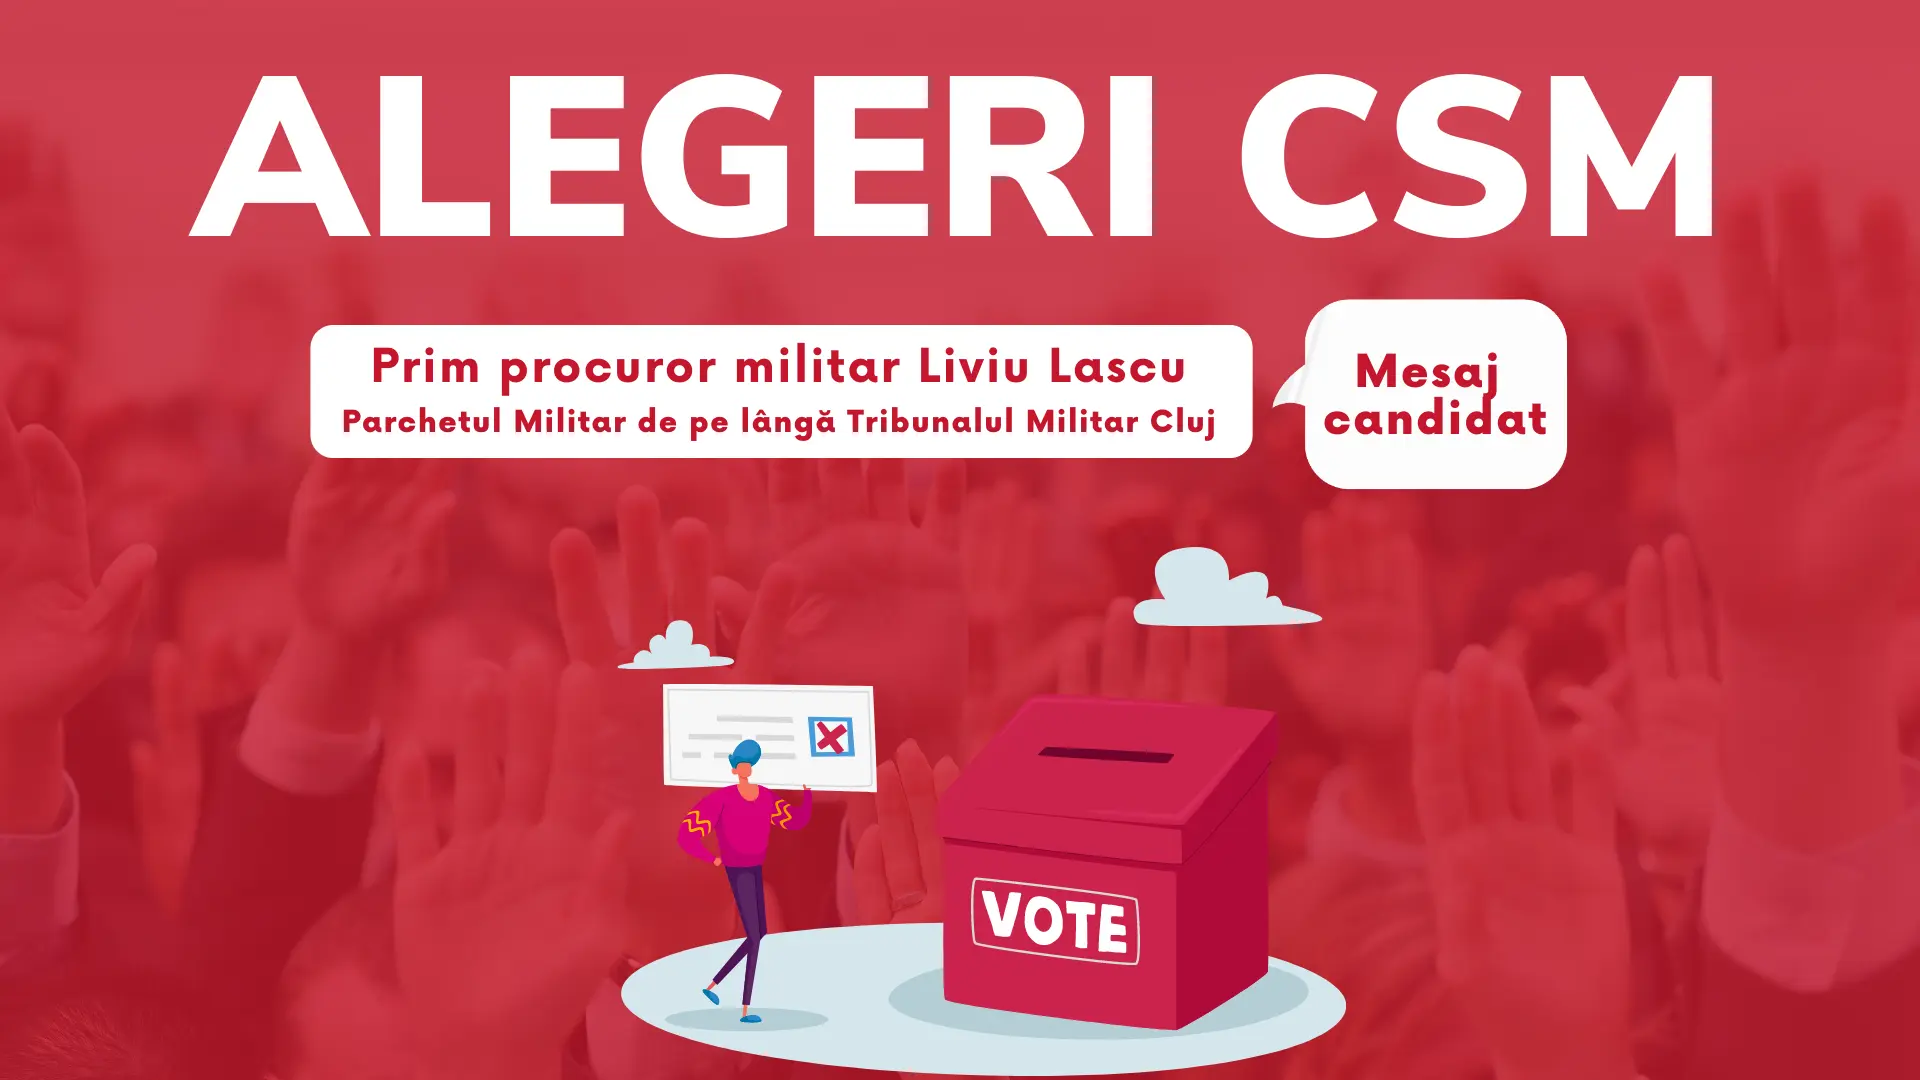 Prim procuror militar Liviu Lascu, Parchetul Militar Cluj. Mesaj Alegeri CSM 2022